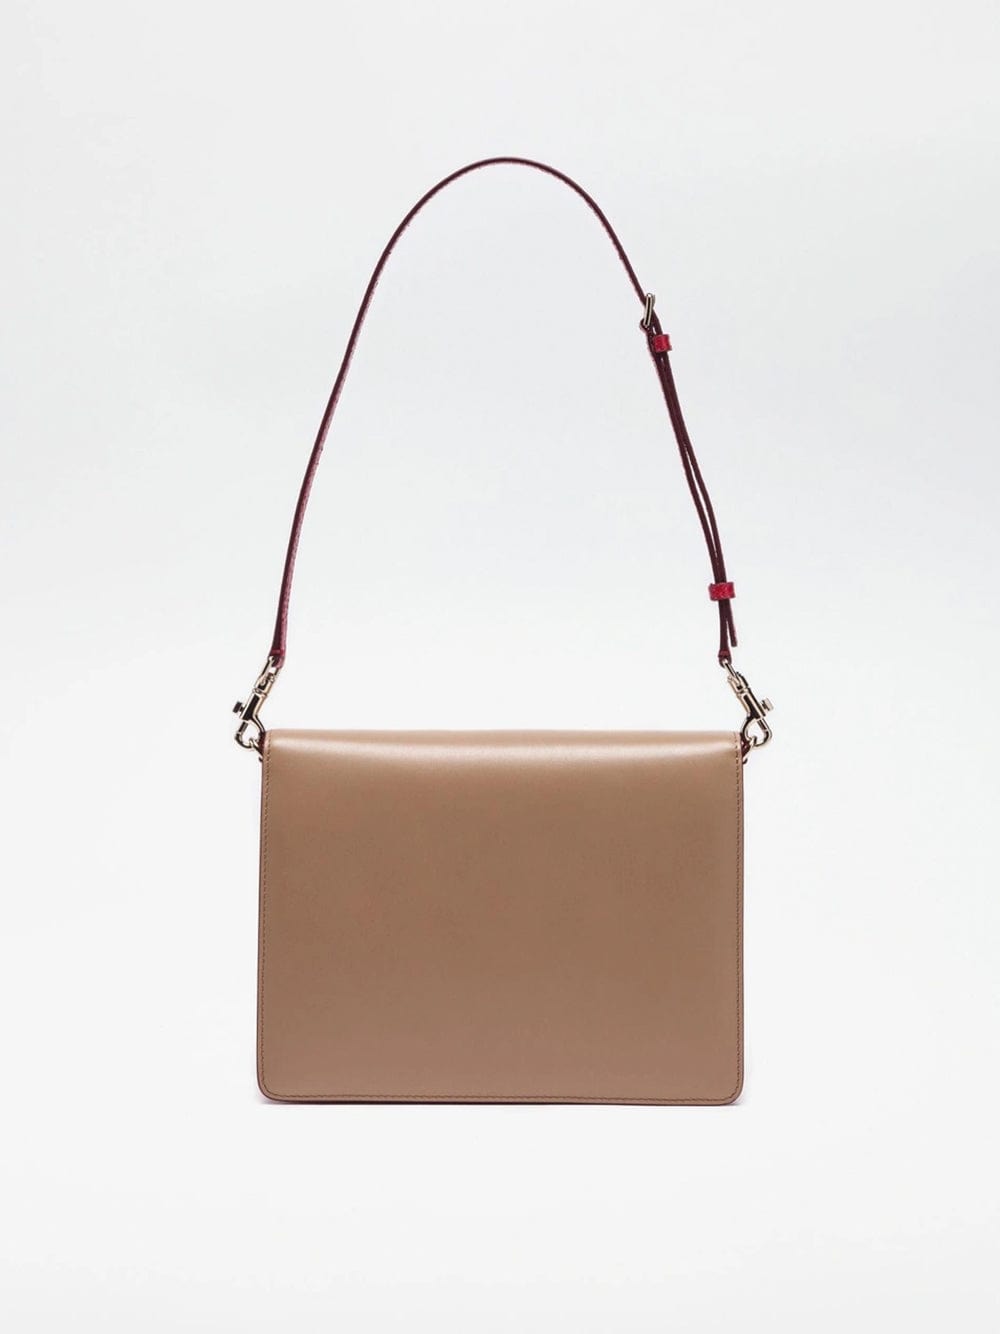 Dolce & Gabbana Lucia Leather Shoulder Bag